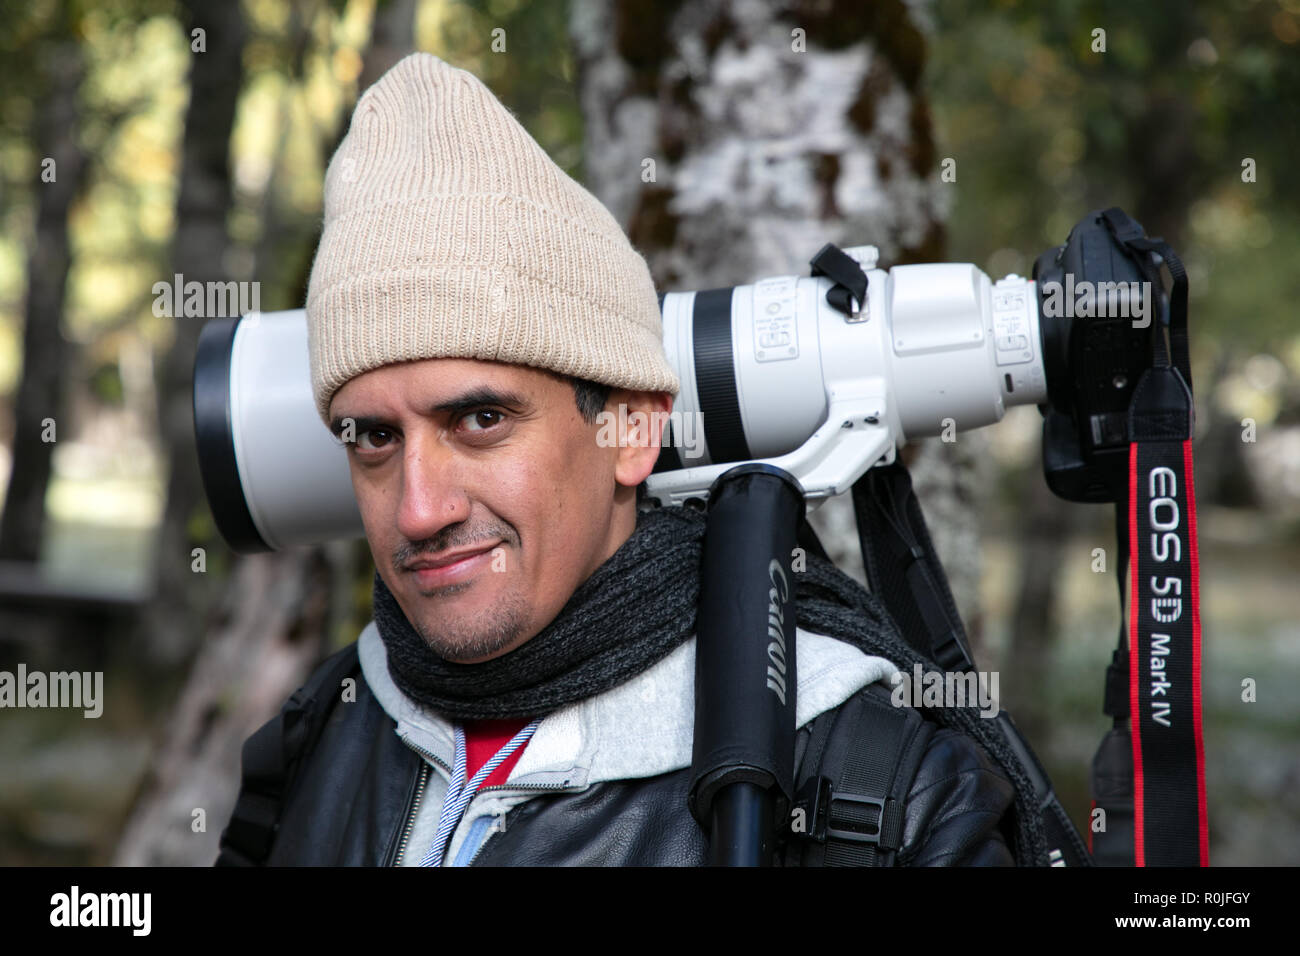 Porträt einer Natur wildlife professioneller Fotograf mit einer Canon EOS 5D Mark IV 200-400 mm f4 super Telezoomobjektiv auf seiner Schulter Stockfoto